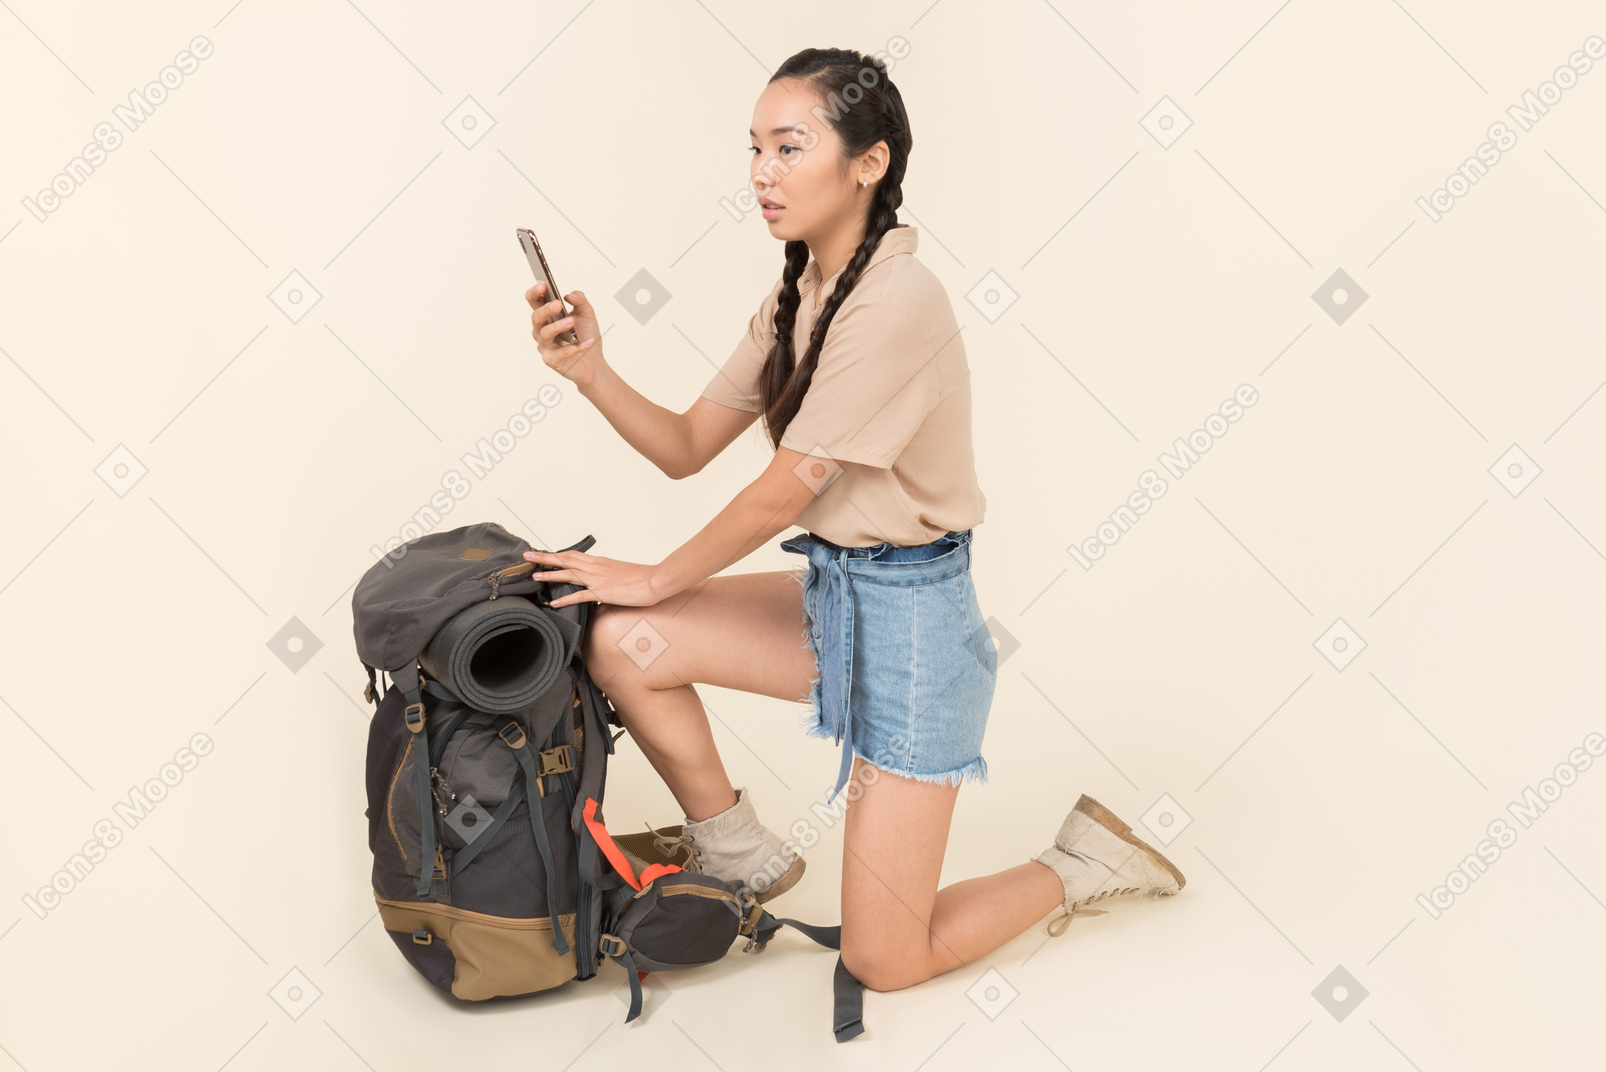 Outragée jeune femme asiatique debout près de sac à dos et prendre une photo avec un smartphone